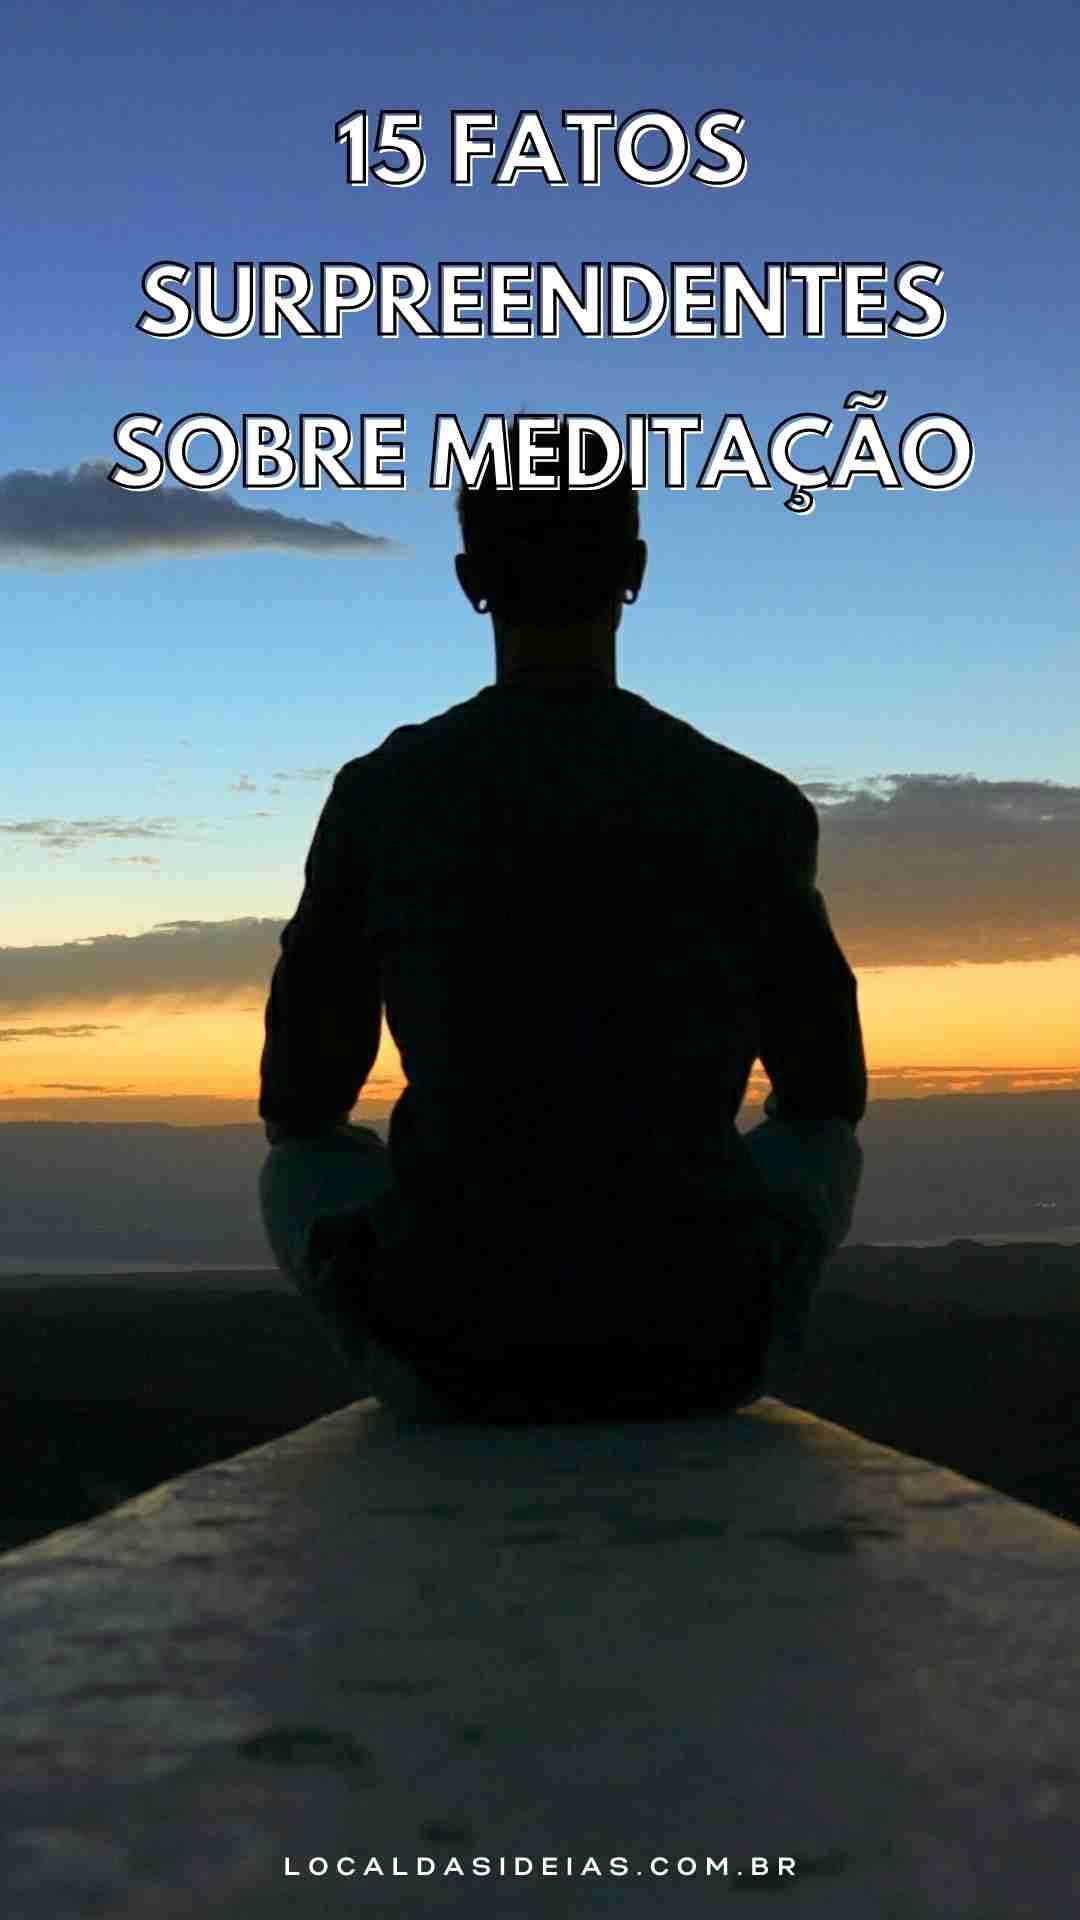 You are currently viewing 15 Fatos surpreendentes sobre meditação